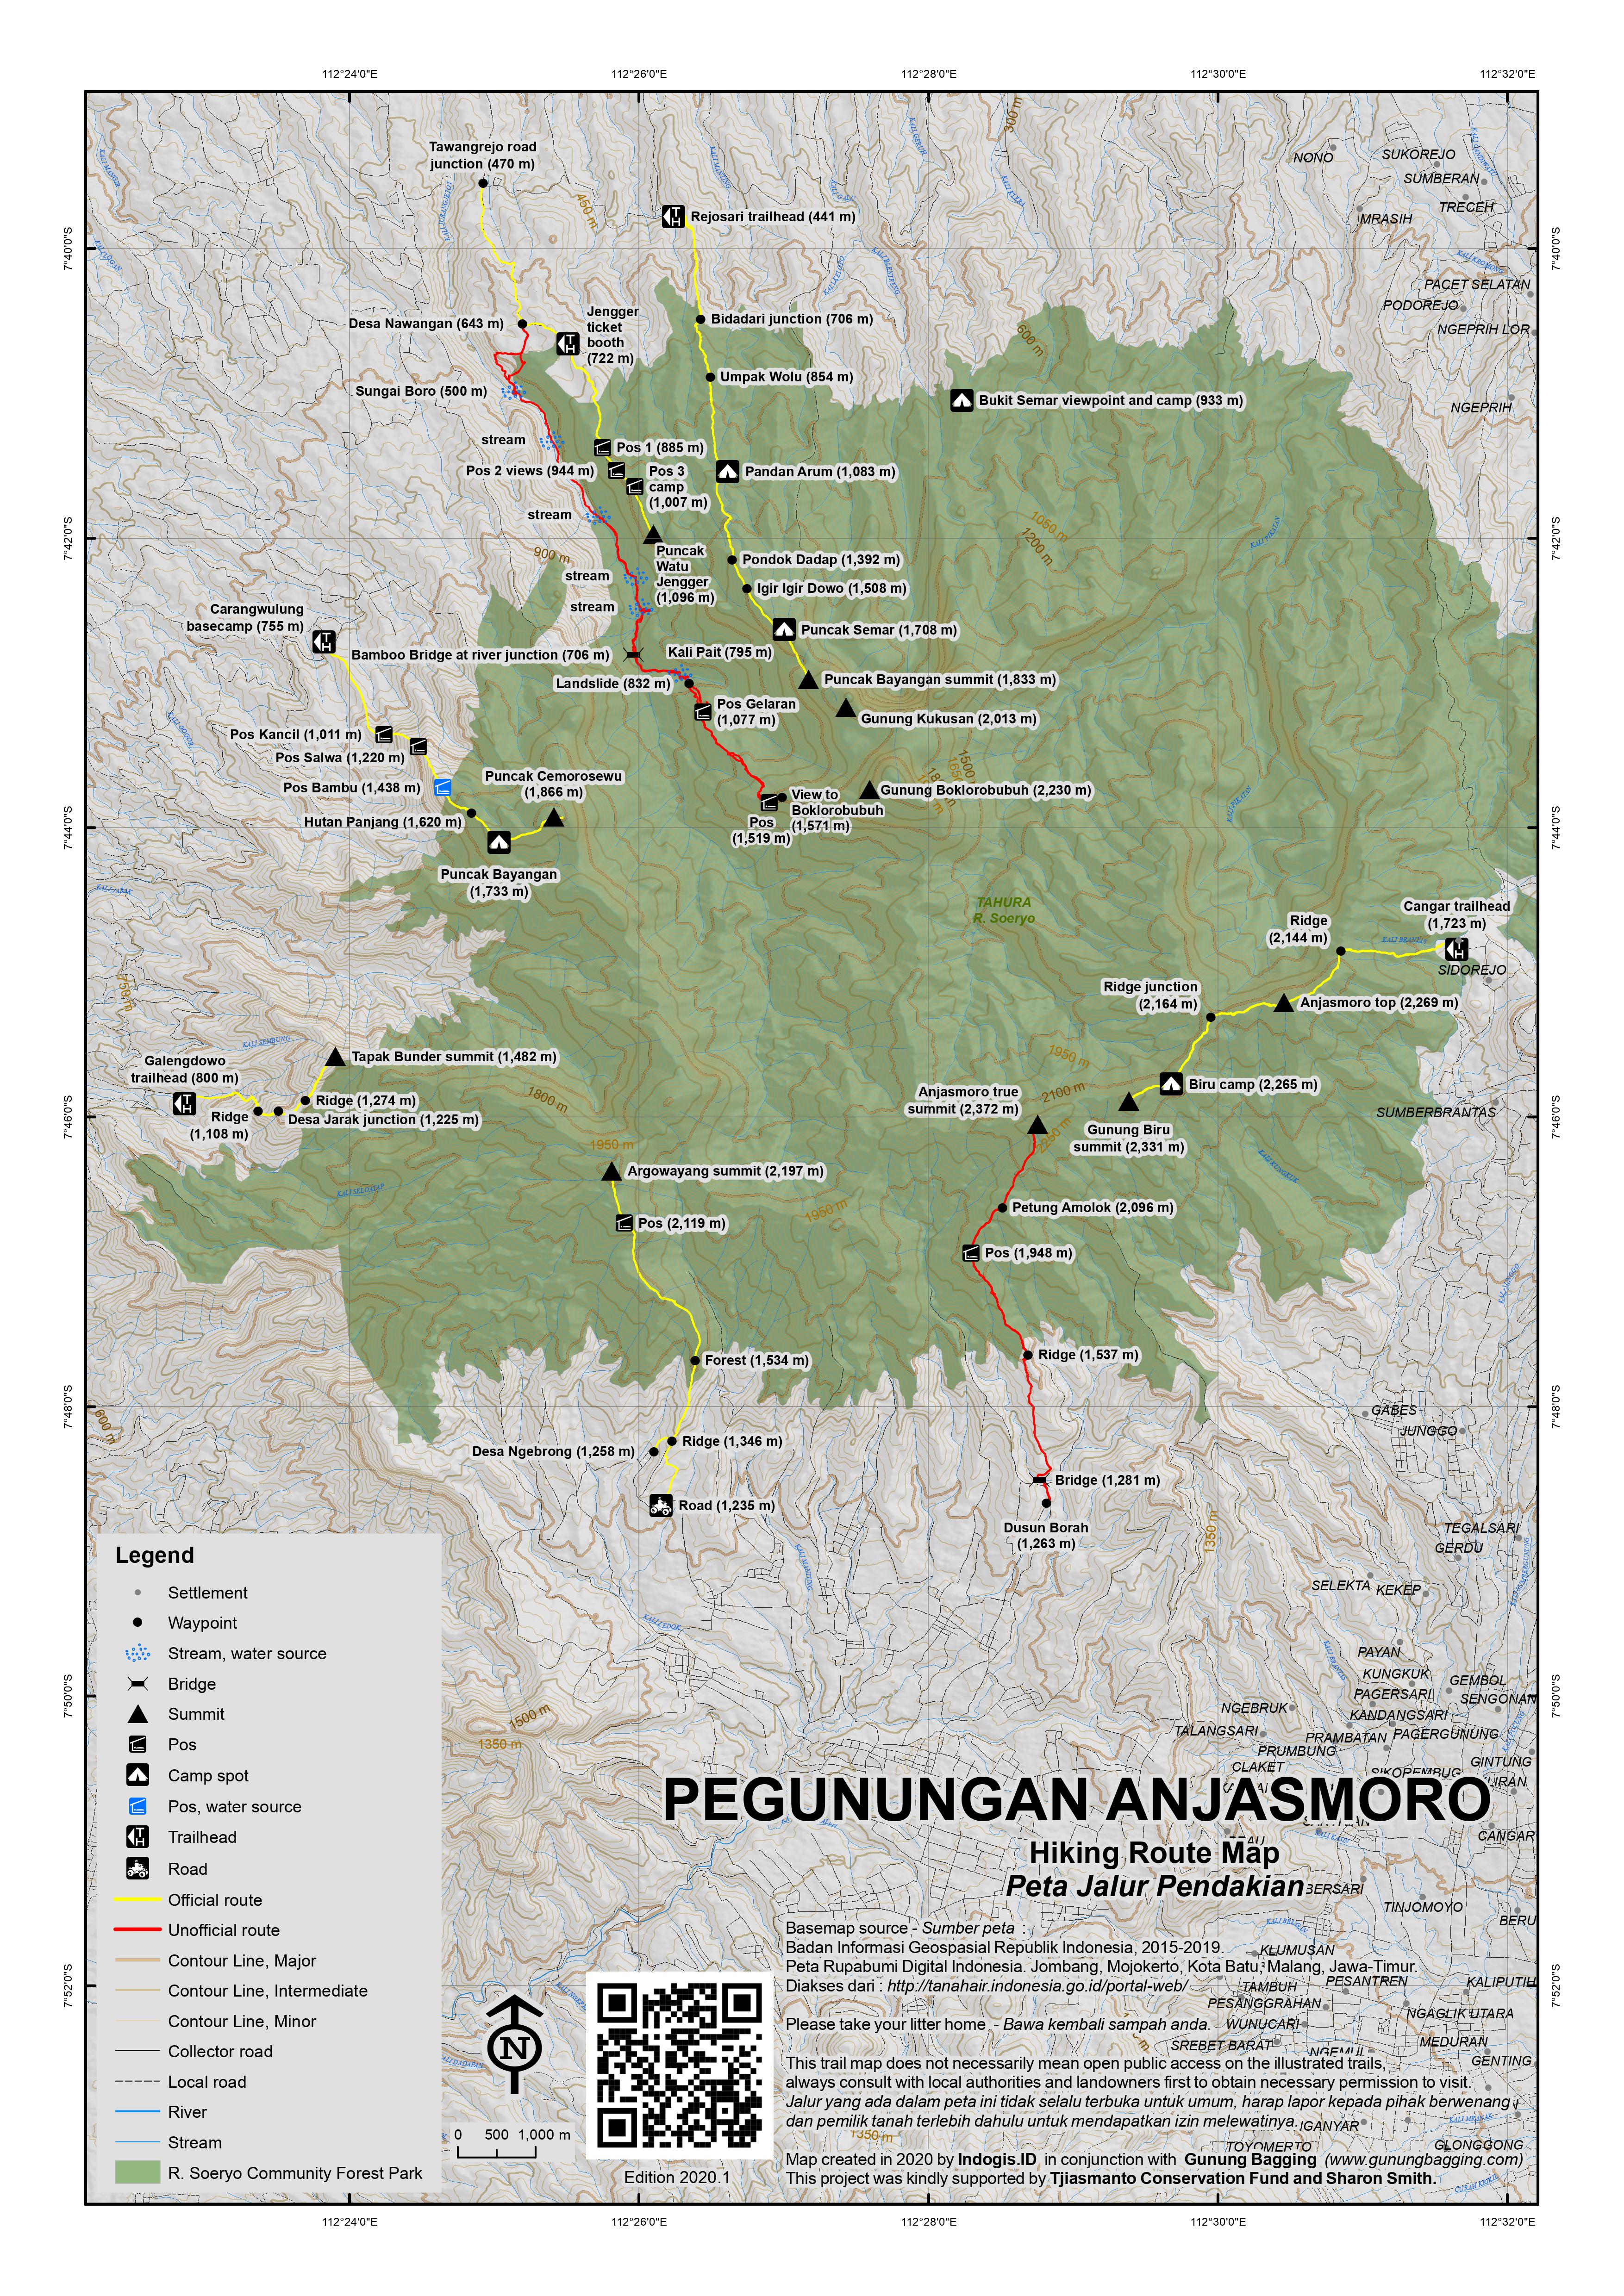 Peta Jalur Pendakian Gunung Anjasmoro